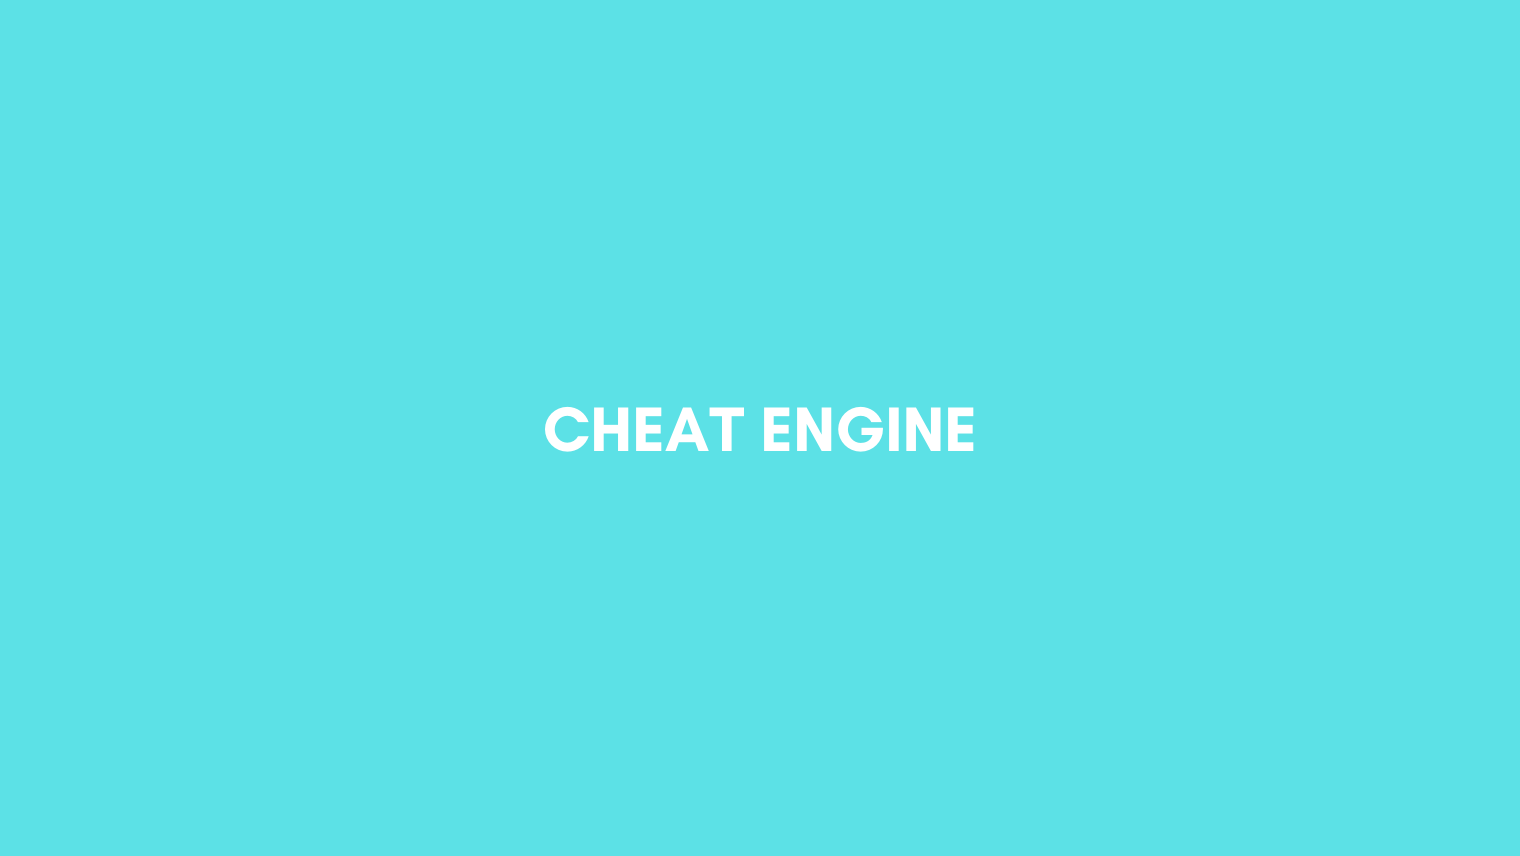 Cara Menggunakan Cheat Engine Di Android Tanpa Root. √ Cara Menggunakan Aplikasi Cheat Engine di Android